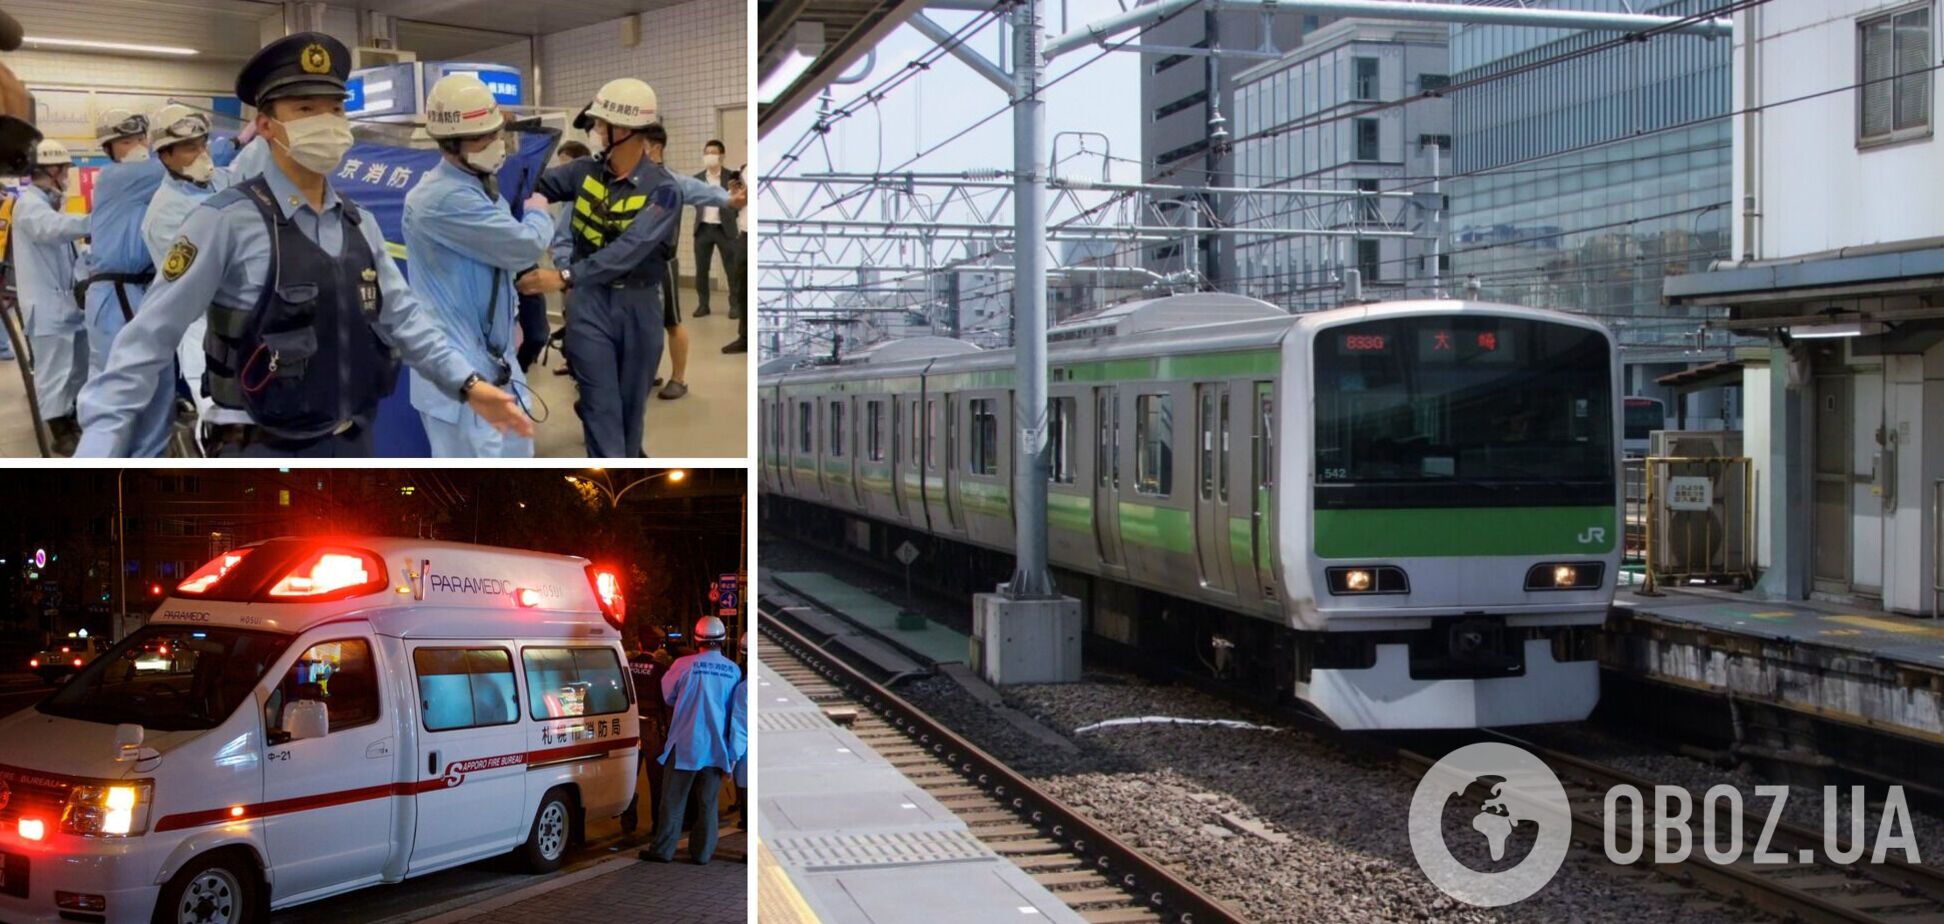 В Токио мужчина устроил резню в поезде: пострадали 10 человек. Видео